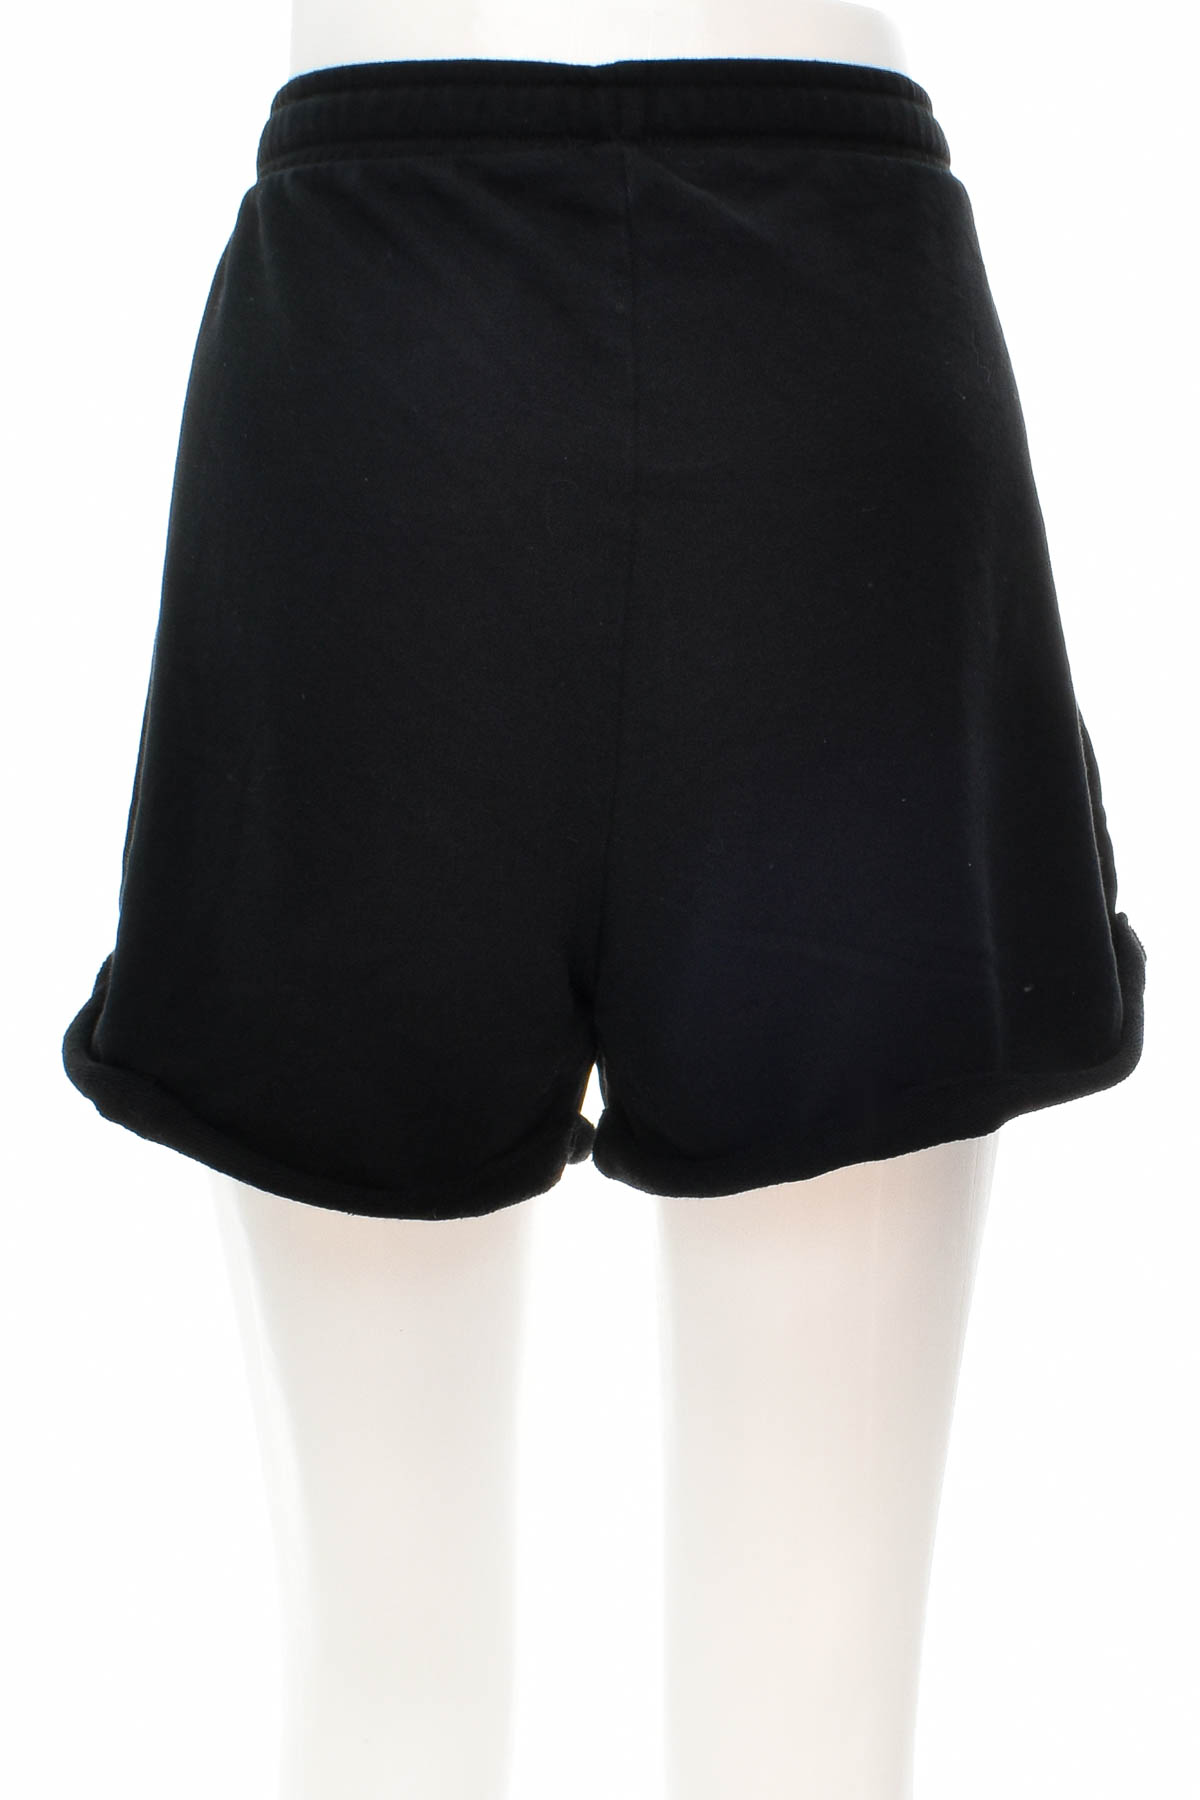 Krótkie spodnie damskie - The Basics x C&A - 1